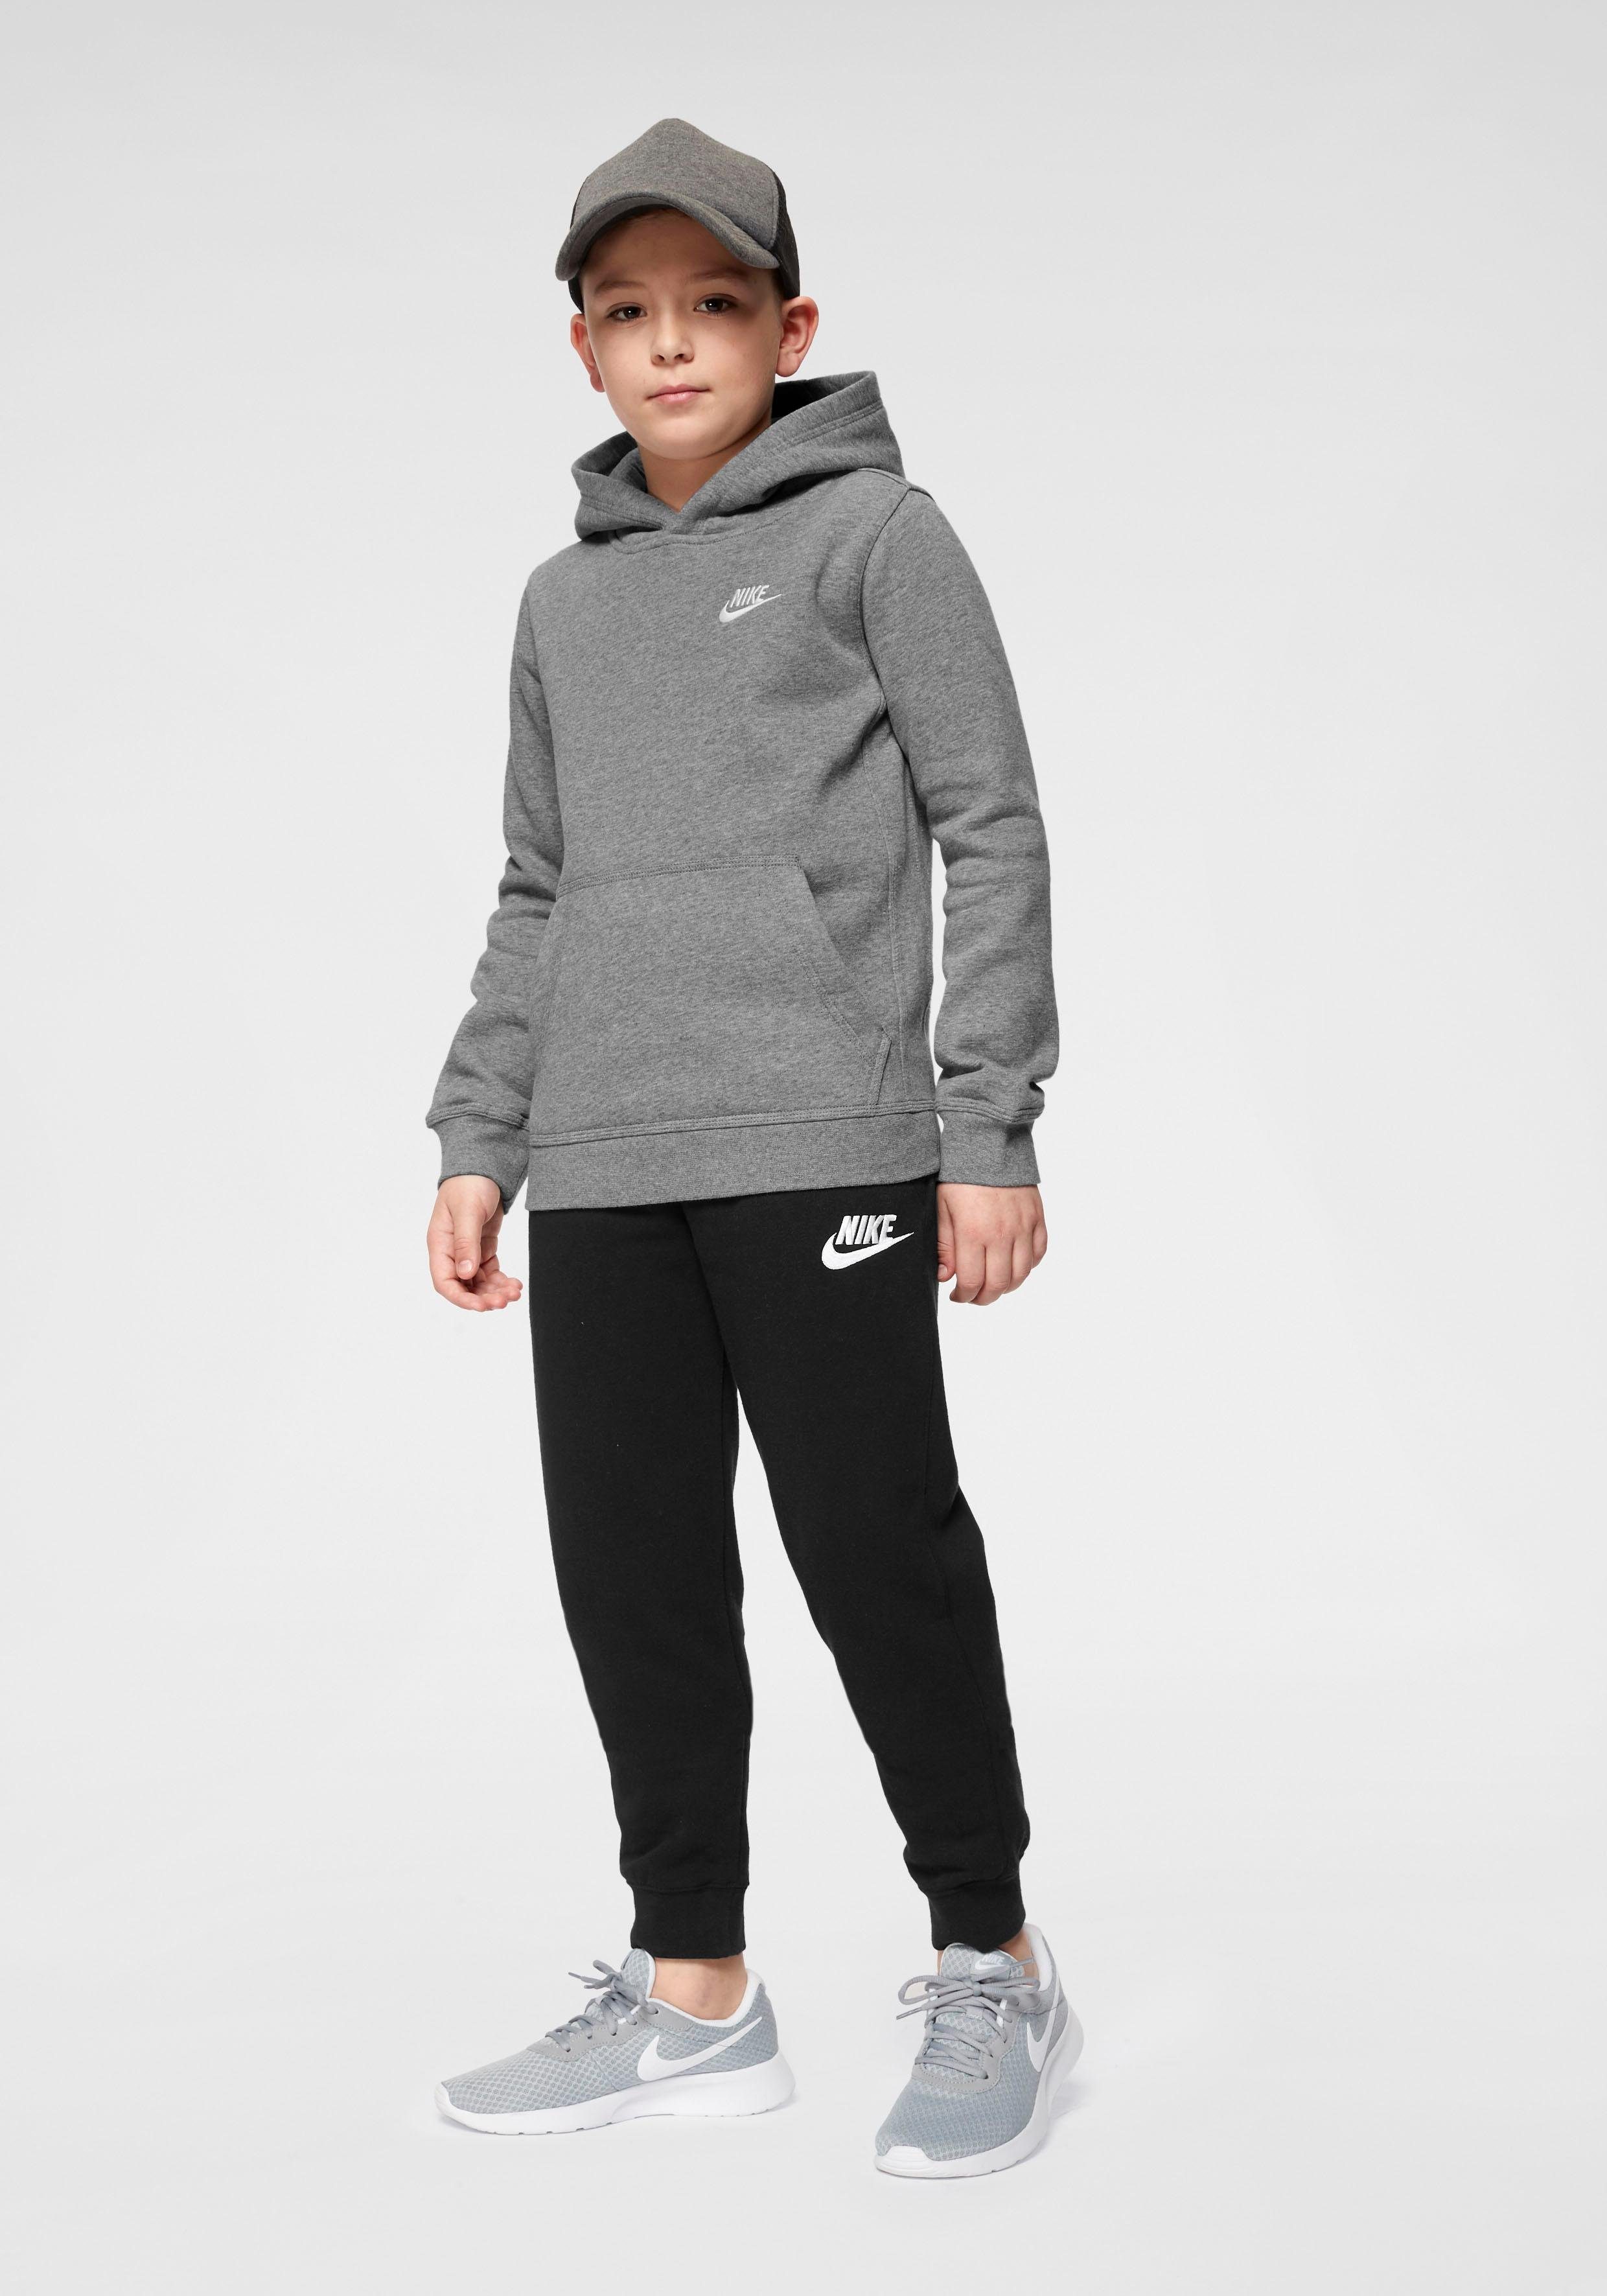 Club Pullover grau-meliert Sportswear Hoodie Nike Big Kids' Kapuzensweatshirt